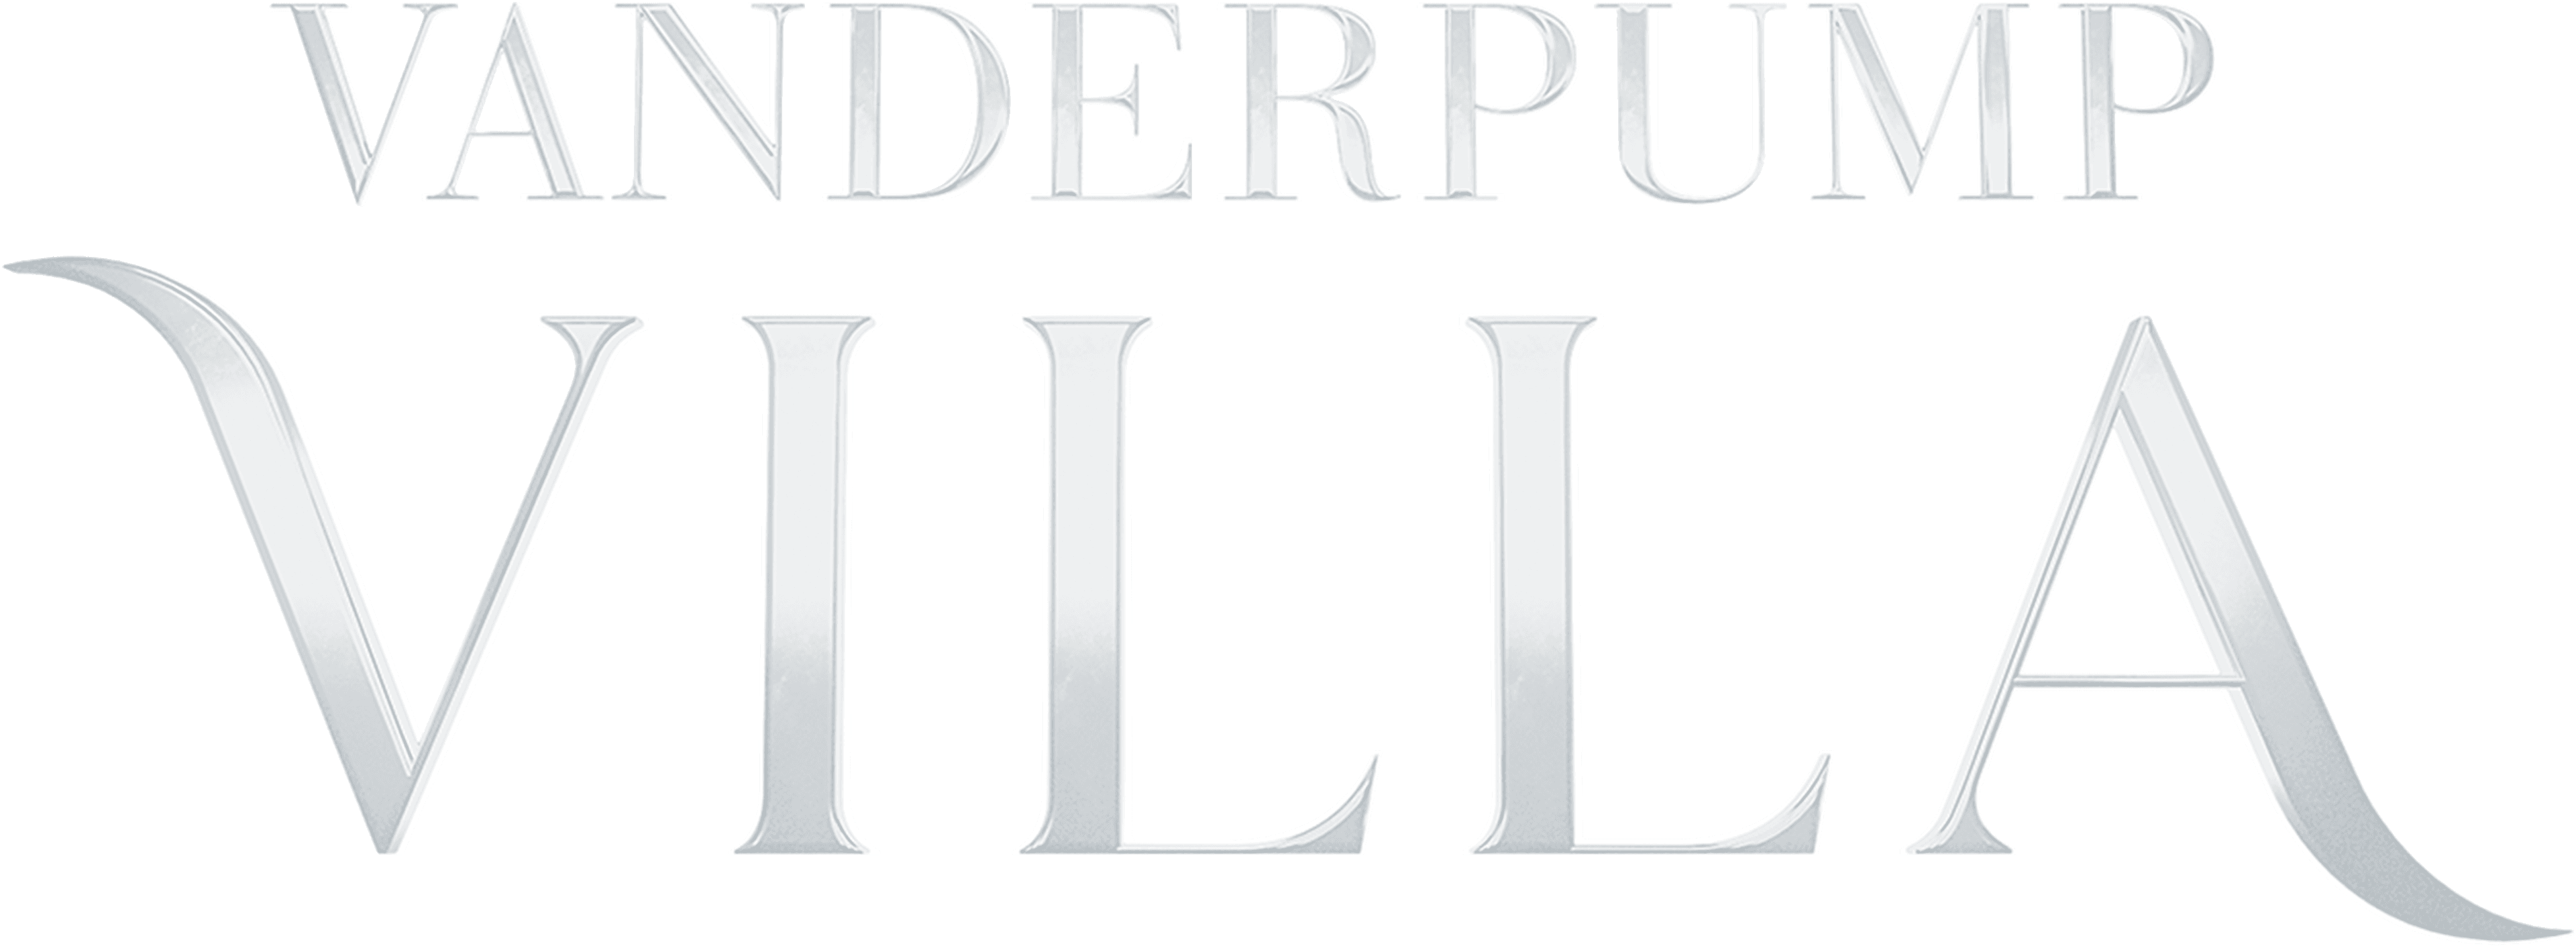 Vanderpump Villa logo